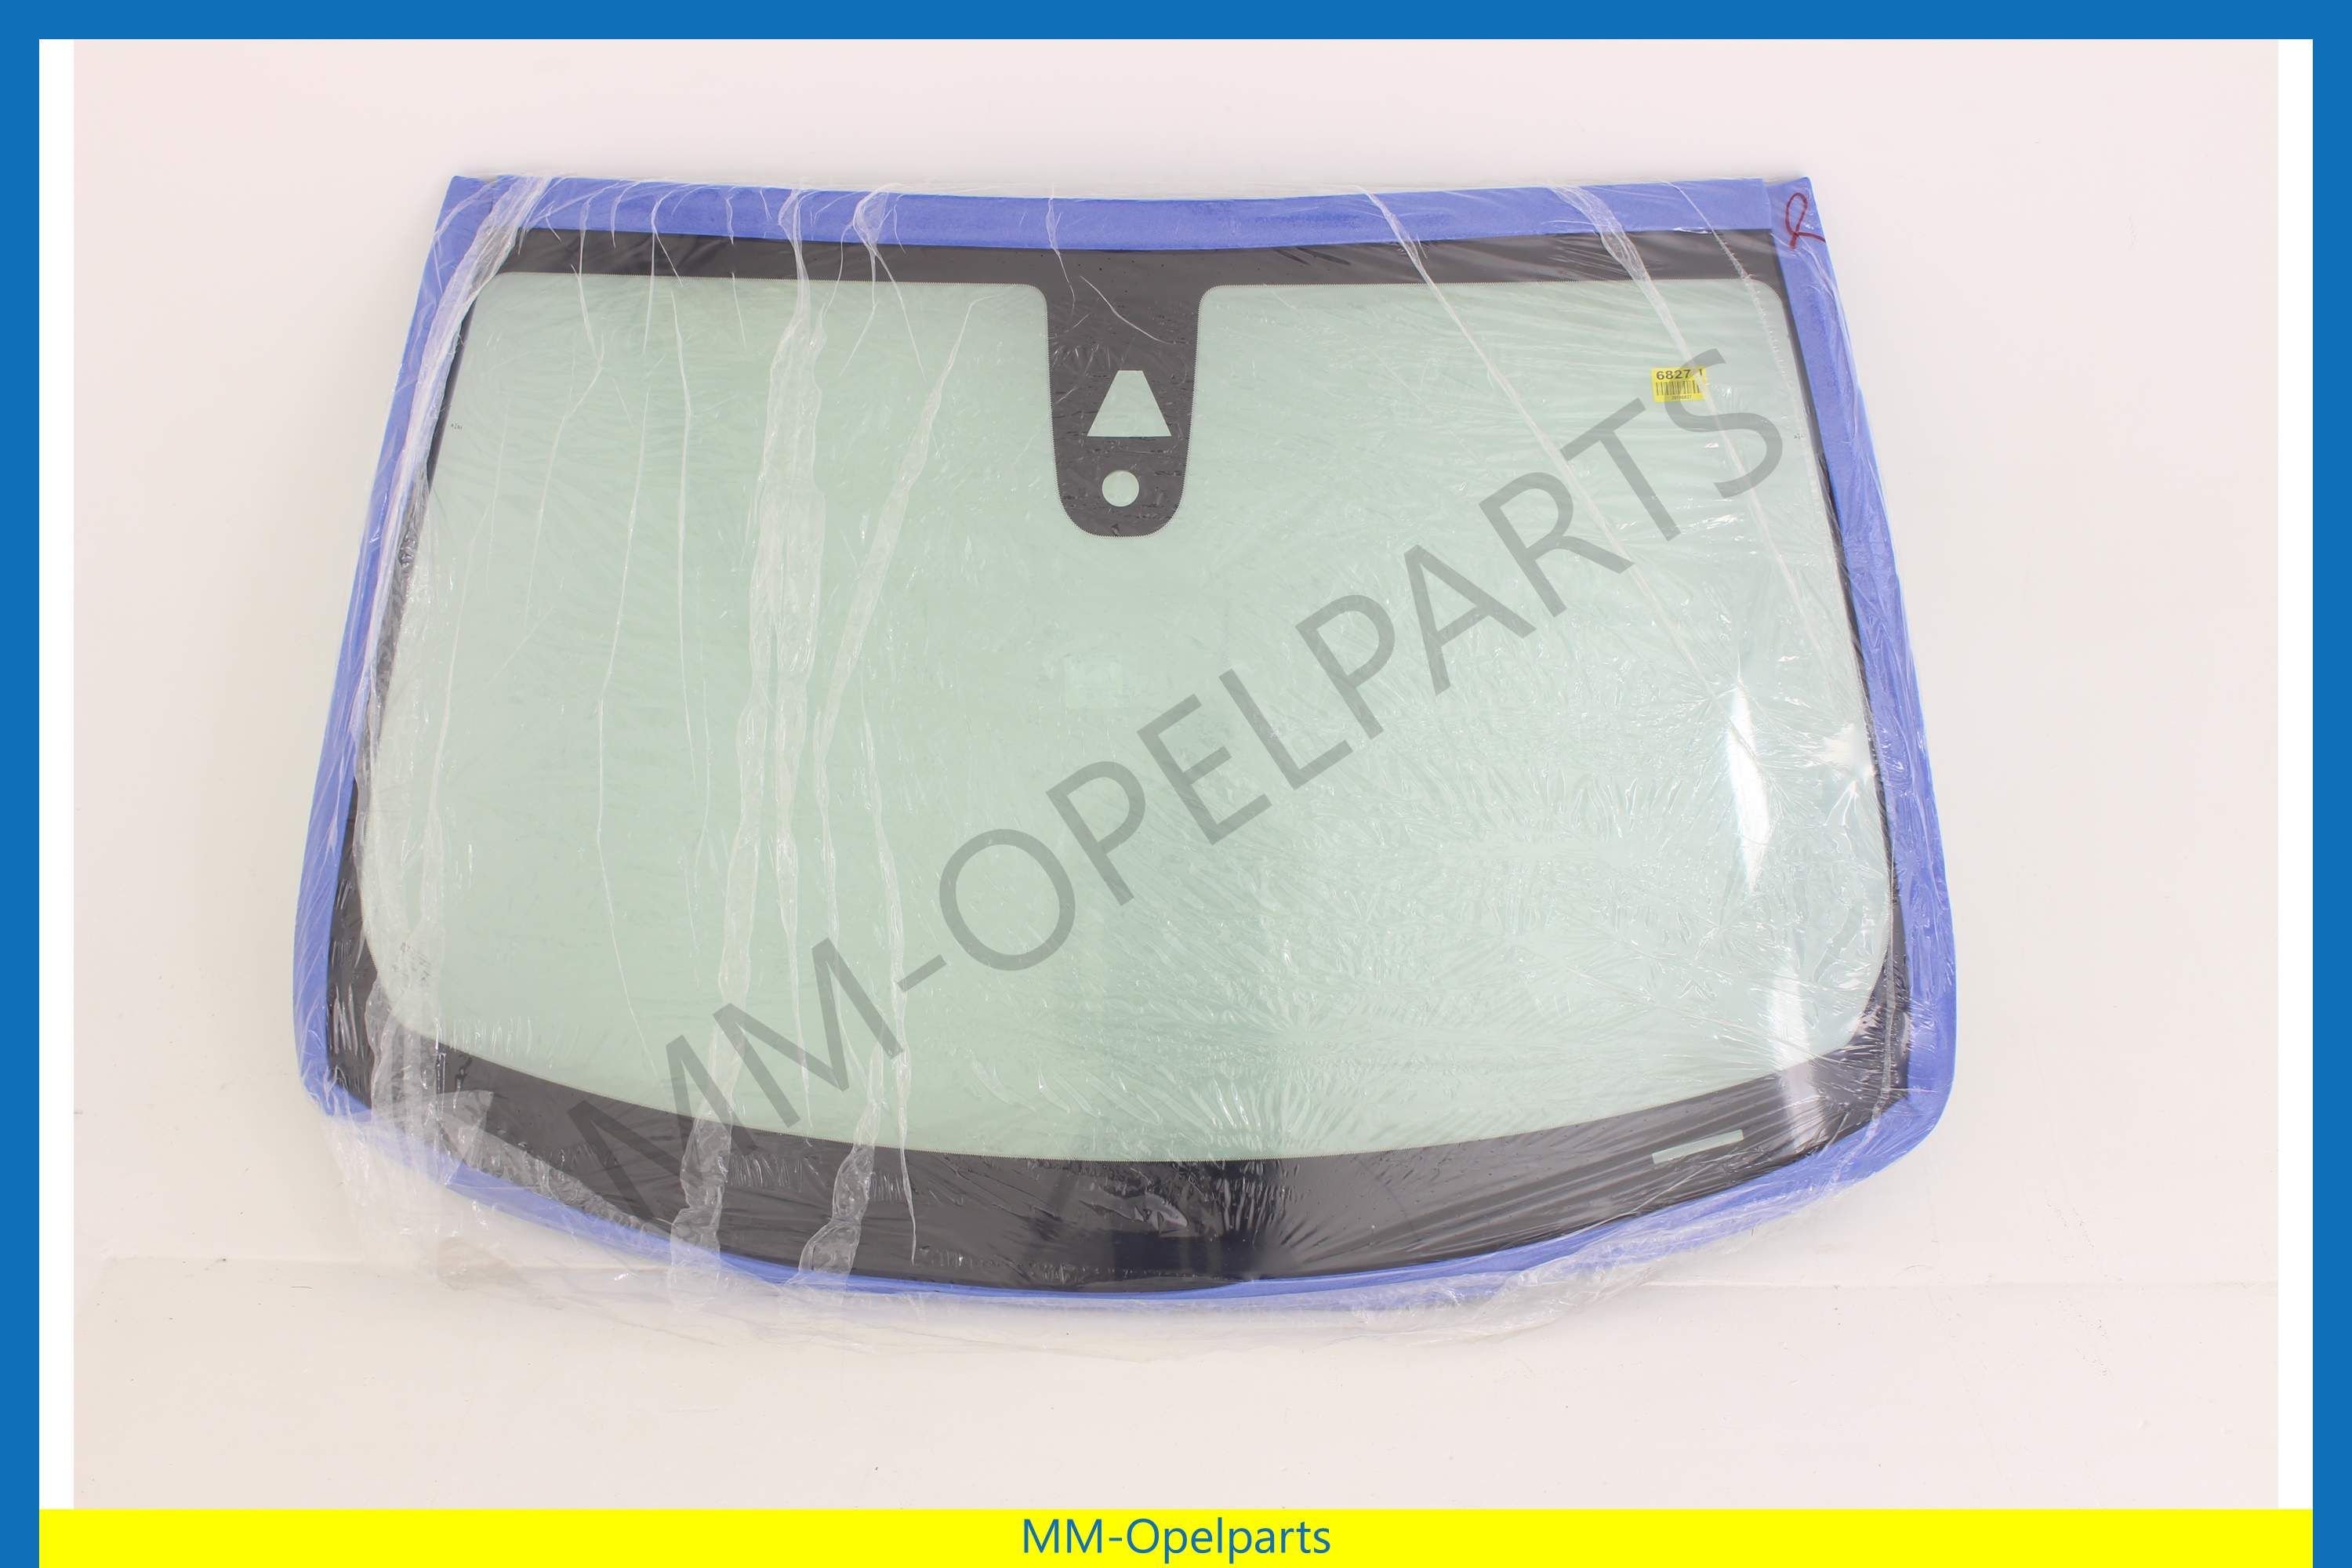 MM-Opelparts Frontscheibe für regensensor, für vordere kamera MM-Opelparts